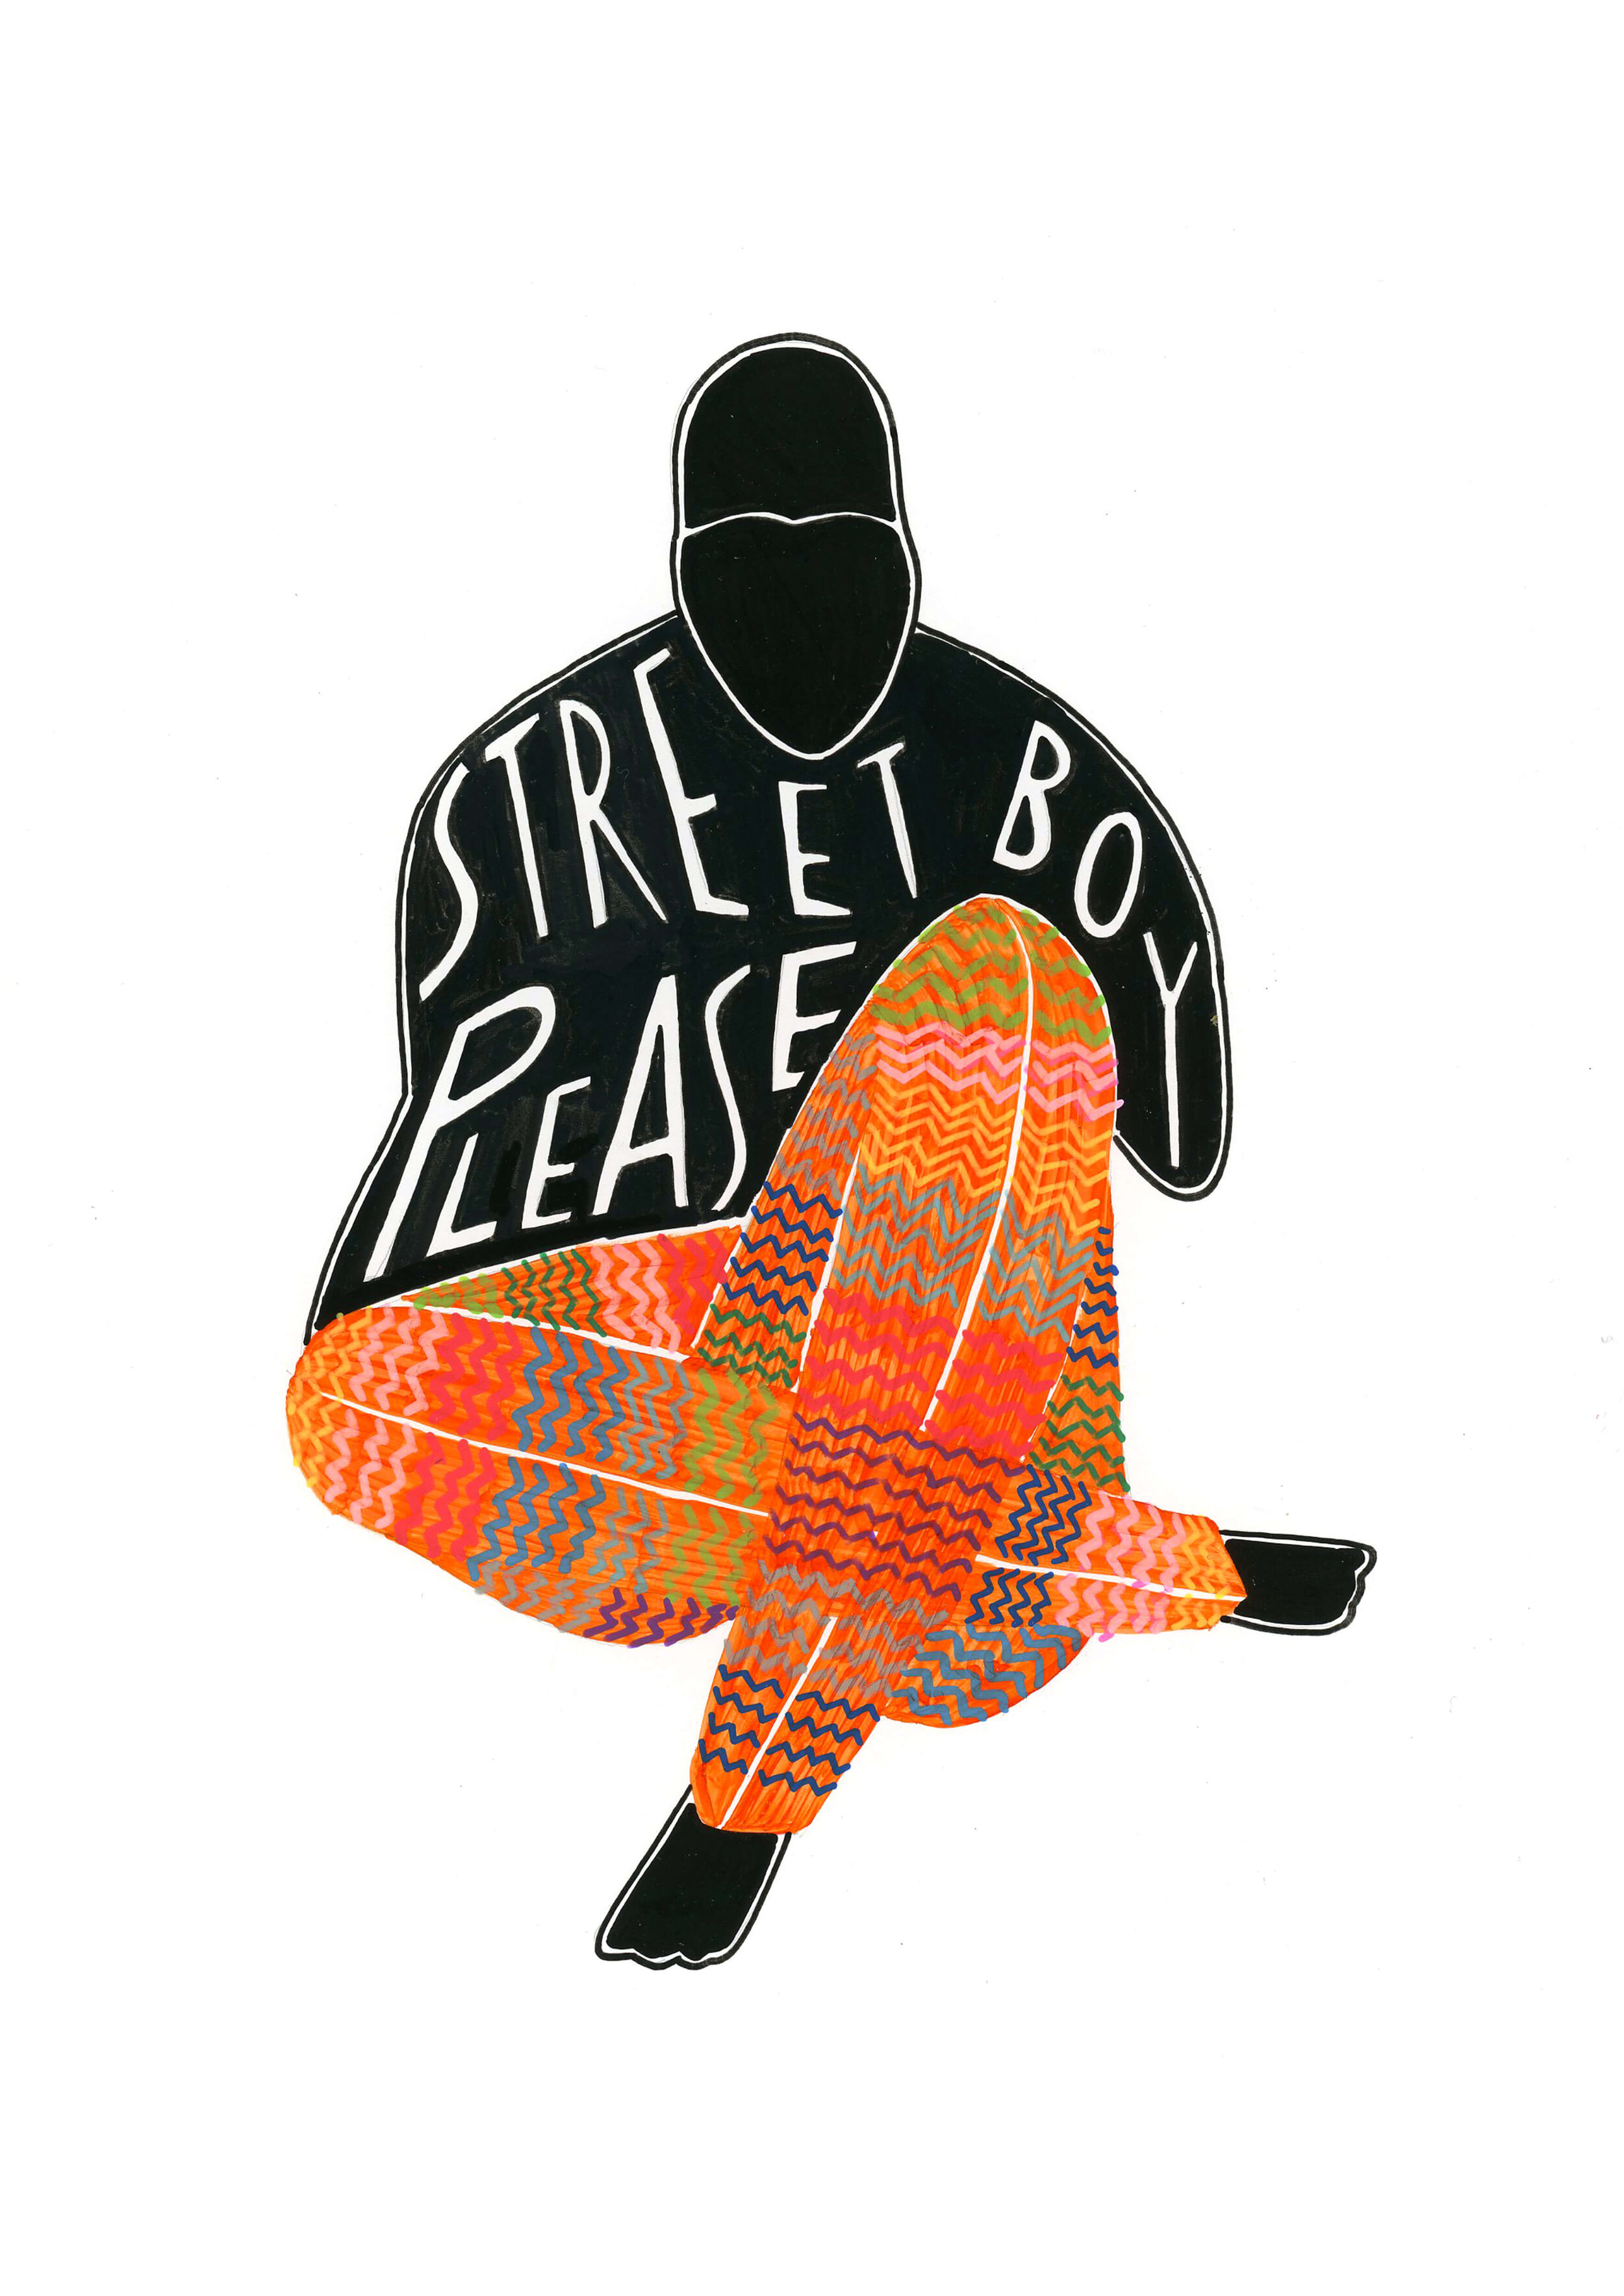 Street Boy Please117.jpg